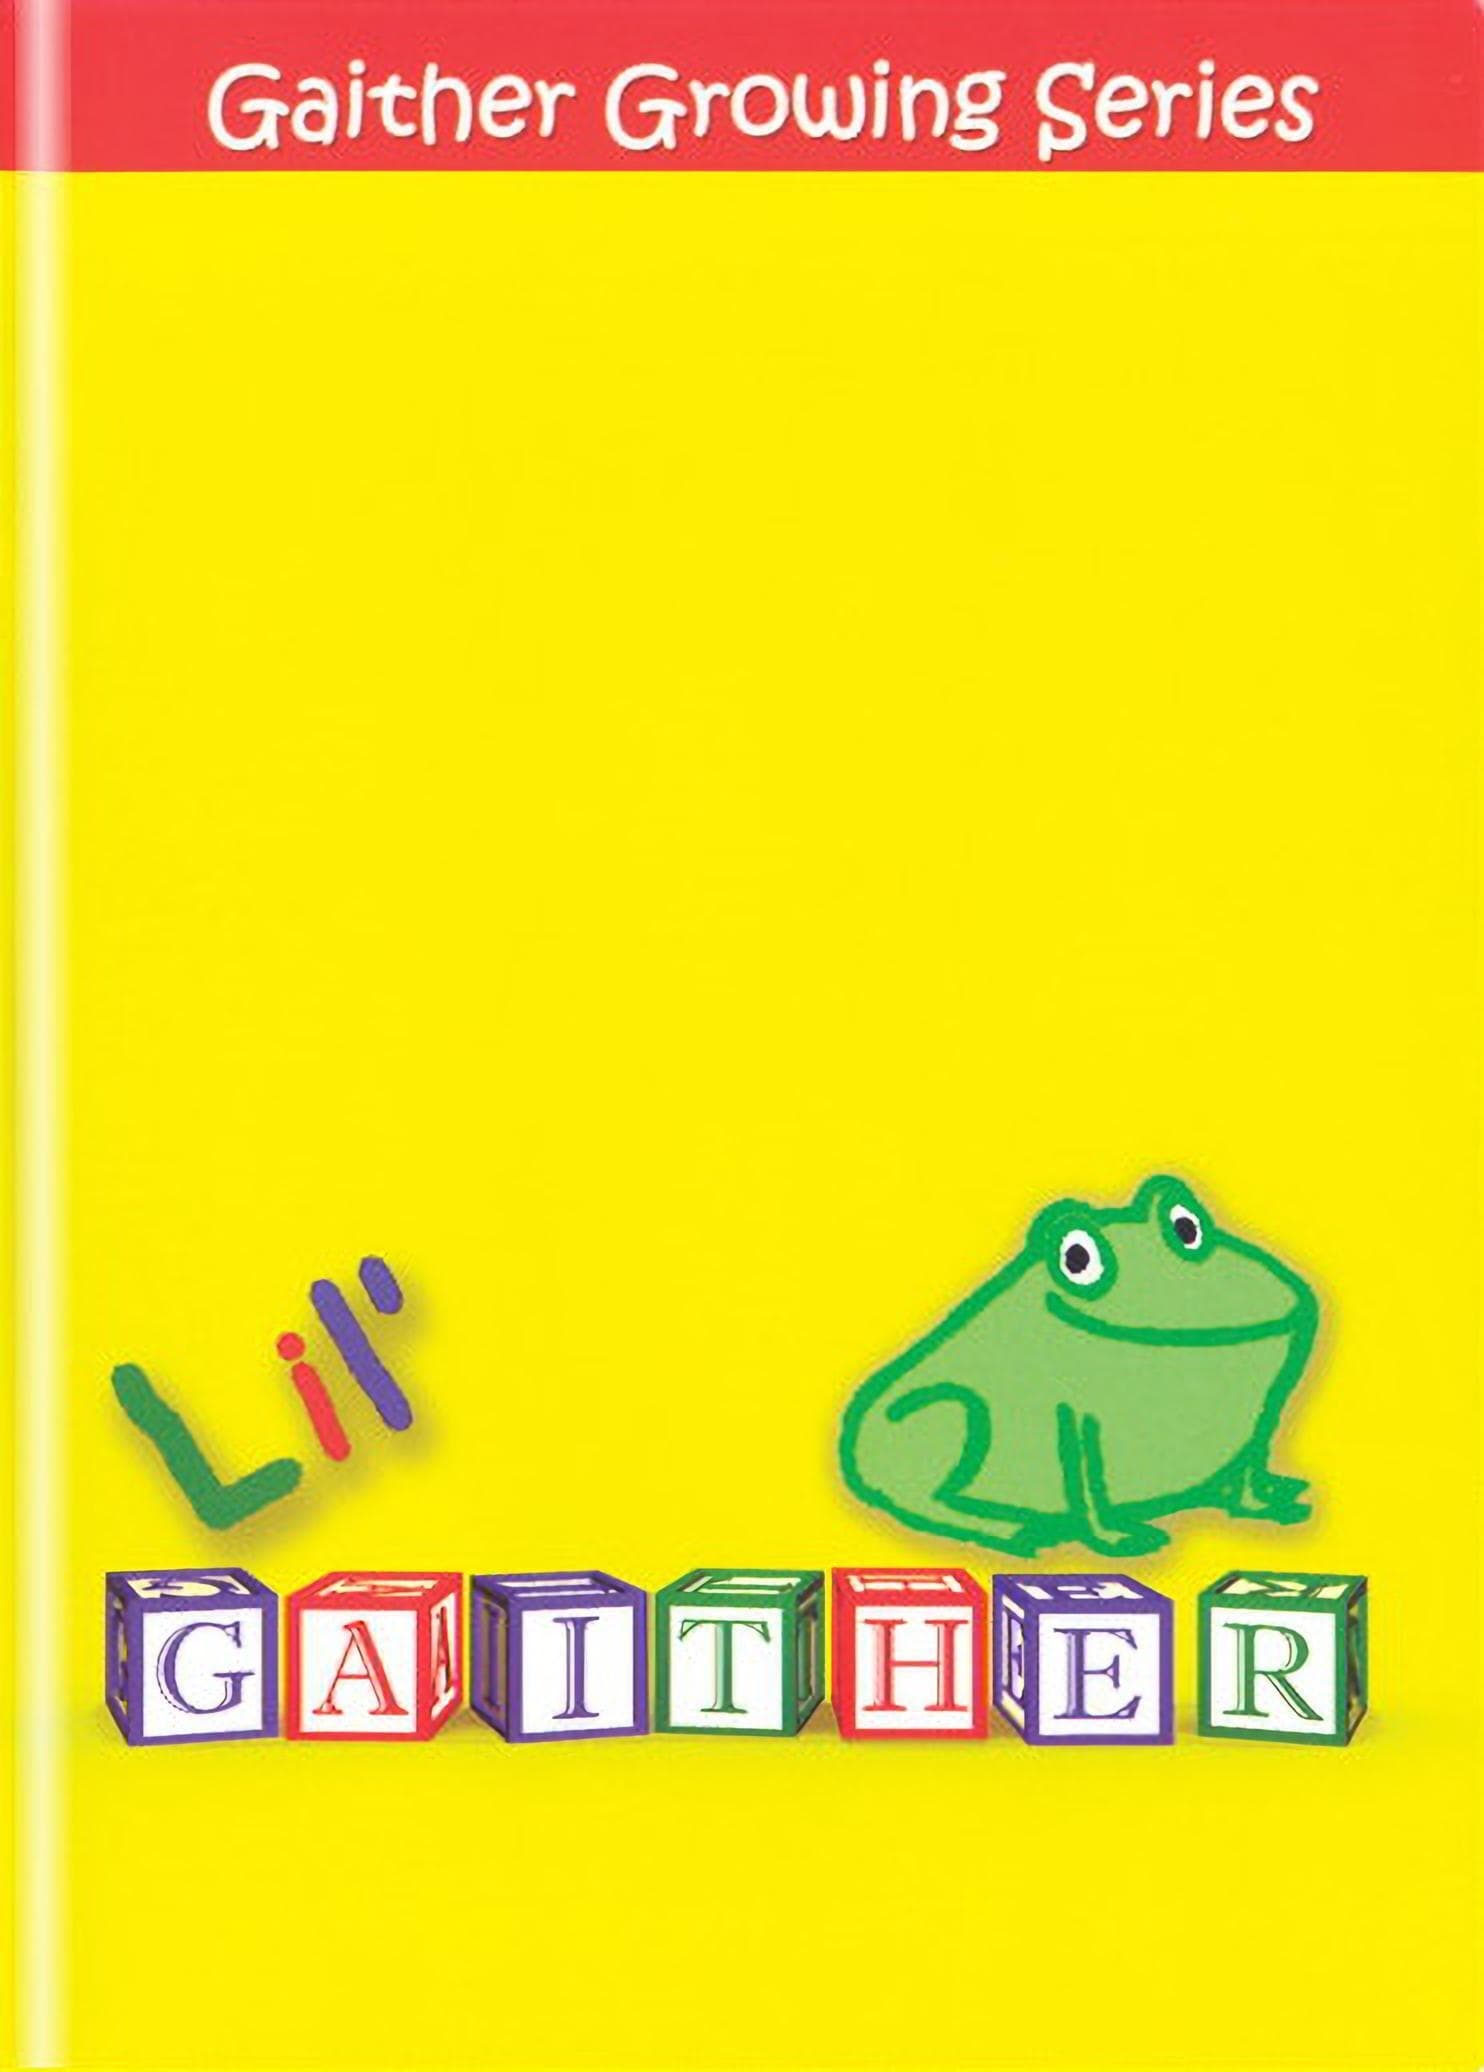 Lil' Gaither